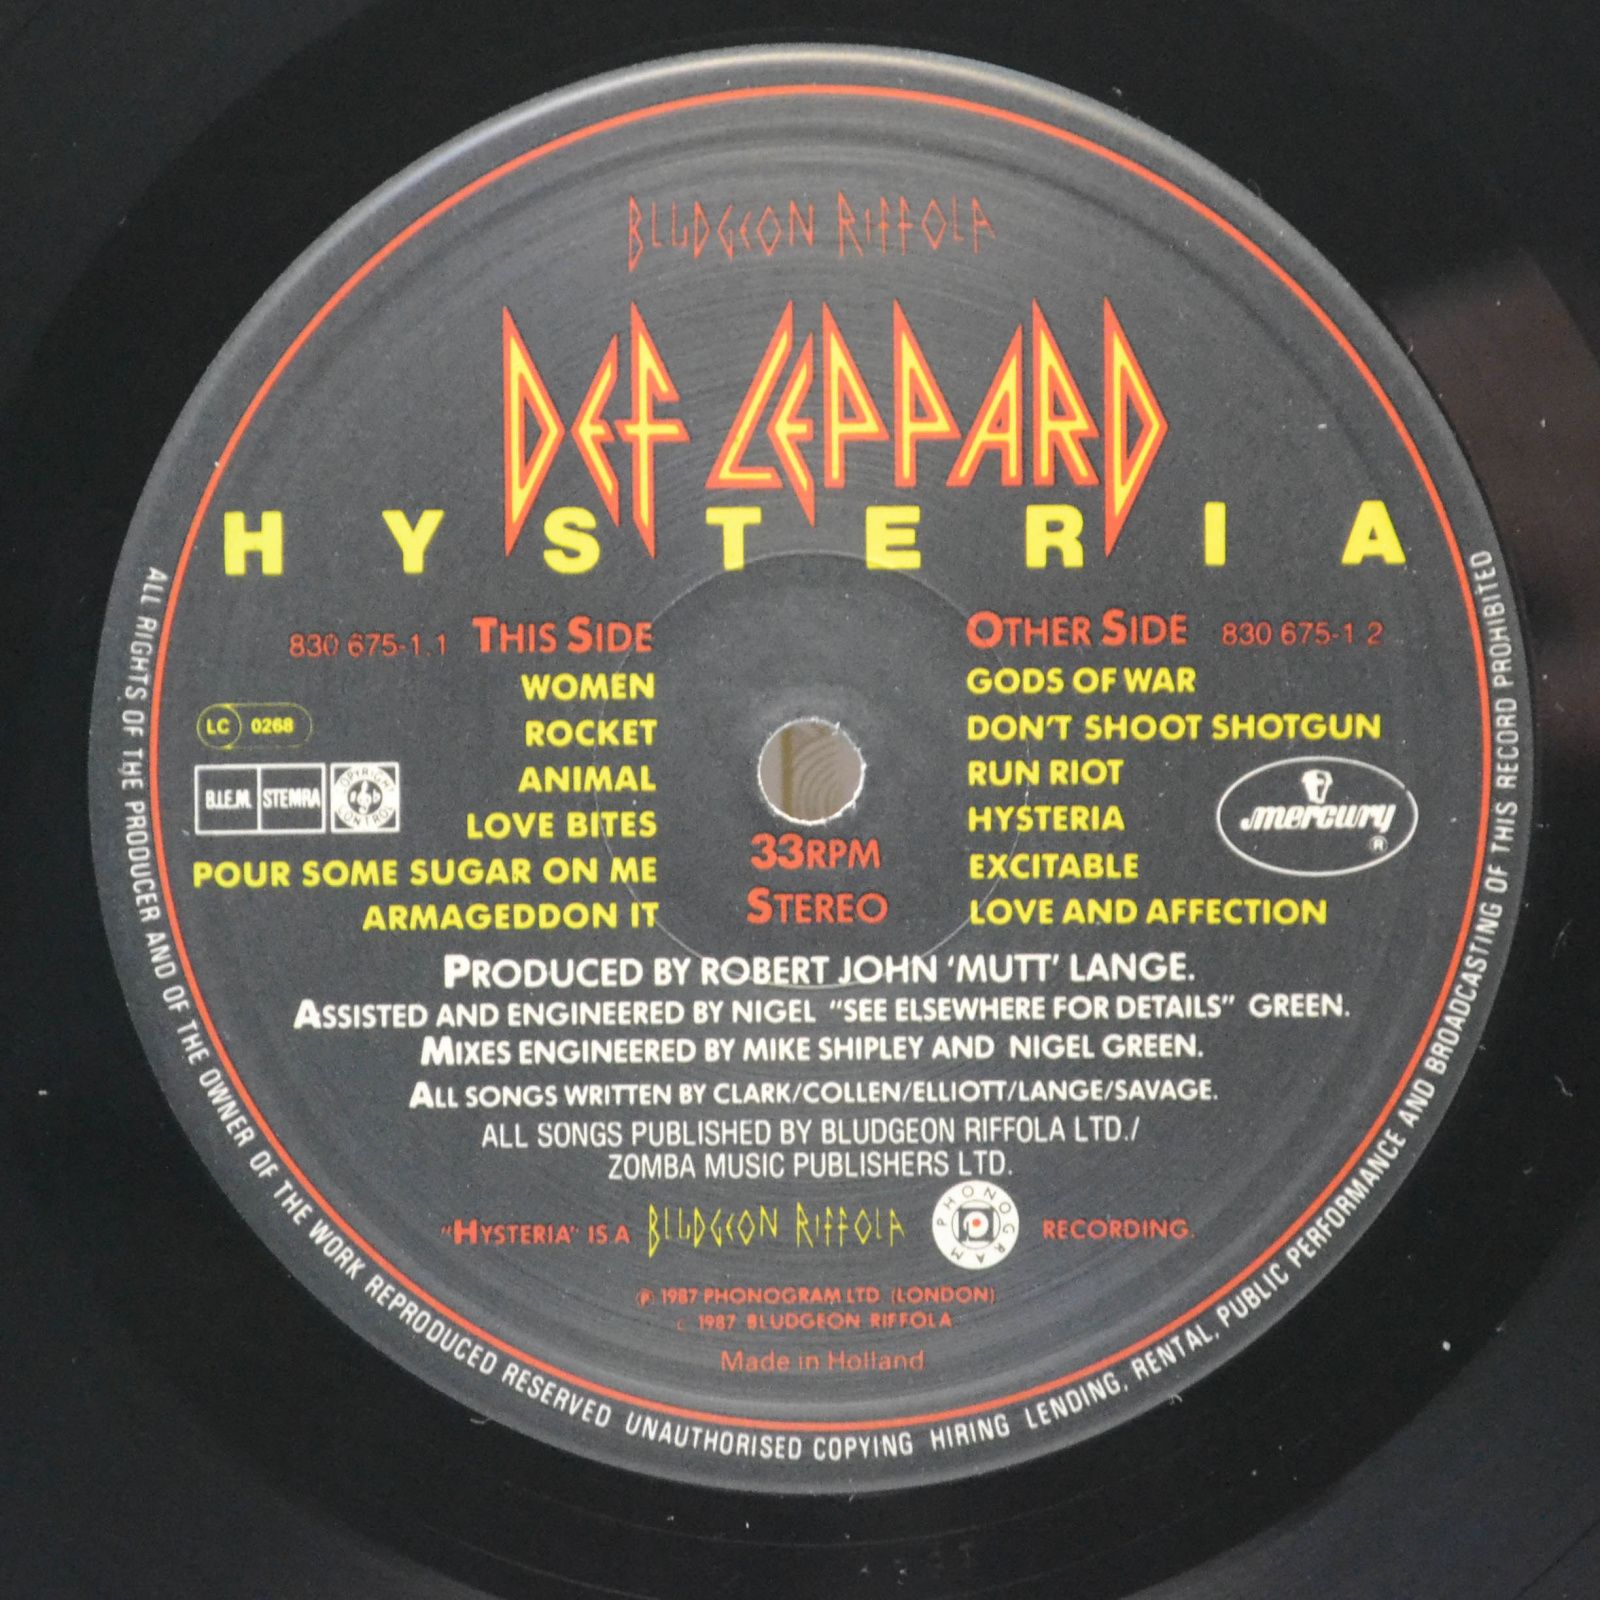 Def Leppard — Hysteria, 1987